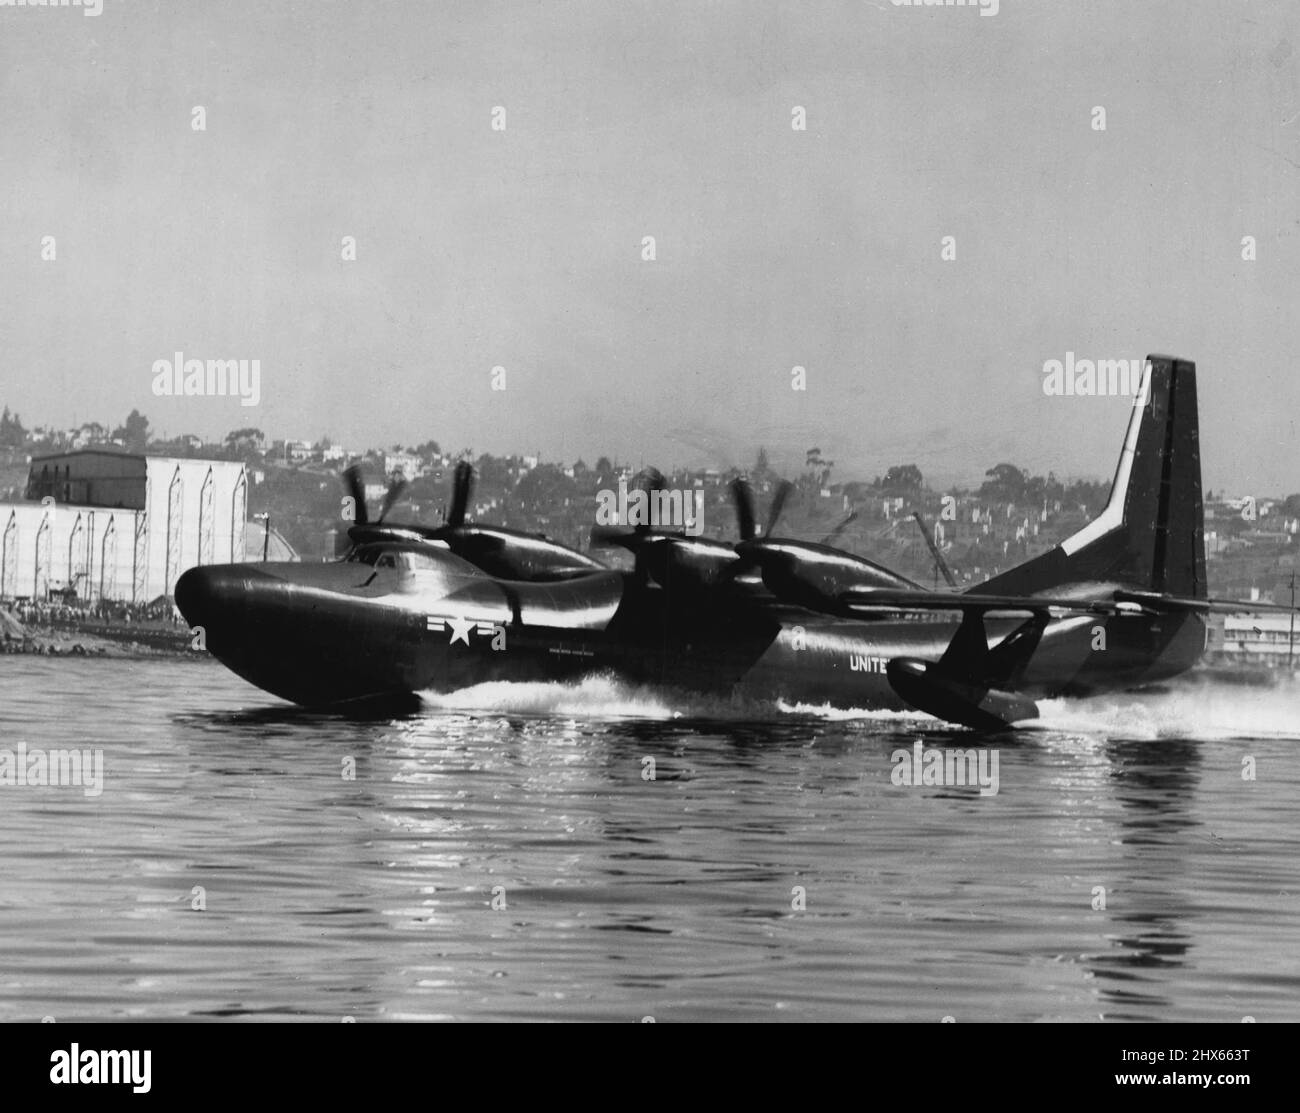 Il primo trasporto in idrovolante turboprop d'America -- il Convair R3Y Tradewind -- corre lungo la Baia di San Diego per il suo primo volo. Costruito dalla Convair's San Diego Division per la Marina degli Stati Uniti, l'idrovolante da 80 tonnellate decolse in meno di 30 secondi ed è stato fatto volare durante un programma di prova di shakedown per più di due ore sul suo primo volo. Al termine del volo, il pilota Convair Test Don Germeraad ha dichiarato: "Ho volato molti tipi di idrovolanti, ma il R3Y è il migliore che abbia mai gestito". Febbraio 25, 1954. Foto Stock